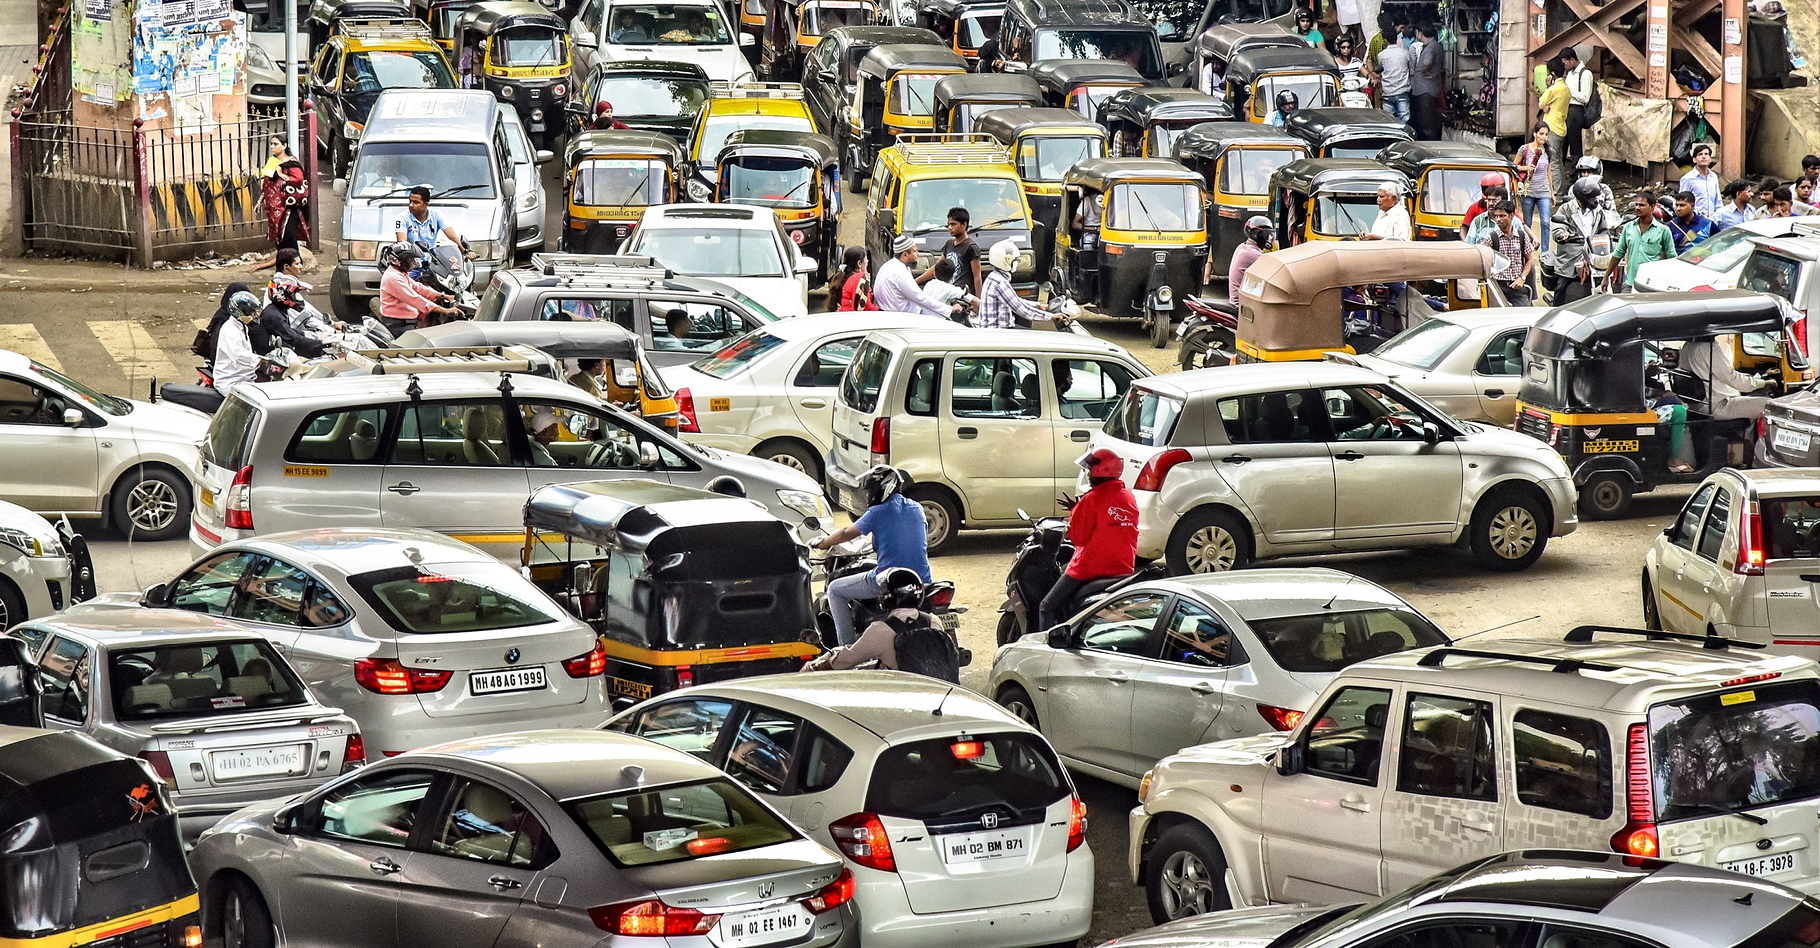 Les taux de motorisation continuent d'augmenter un peu partout dans le monde, et encore plus dans les pays en développement, comme ici en Inde, causant de plus en plus de problèmes d'embouteillage et de pollution de l'air. © Monotoomono, Shutterstock